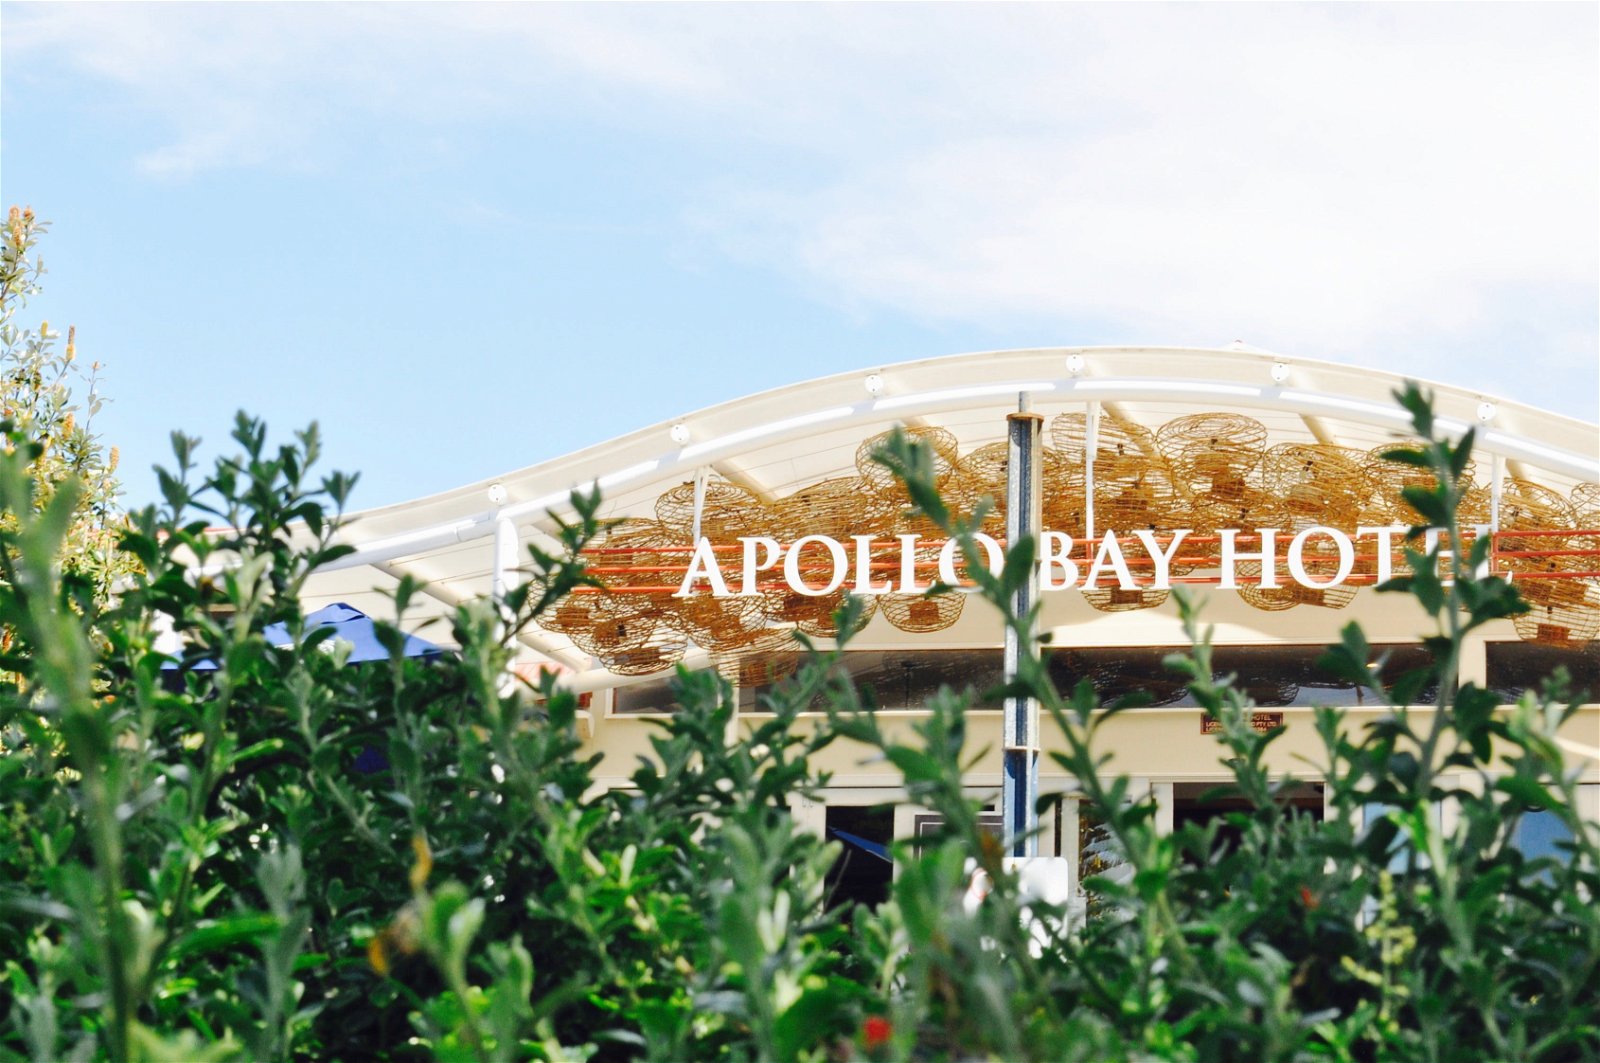 Apollo Bay Hotel - Tourism Gold Coast